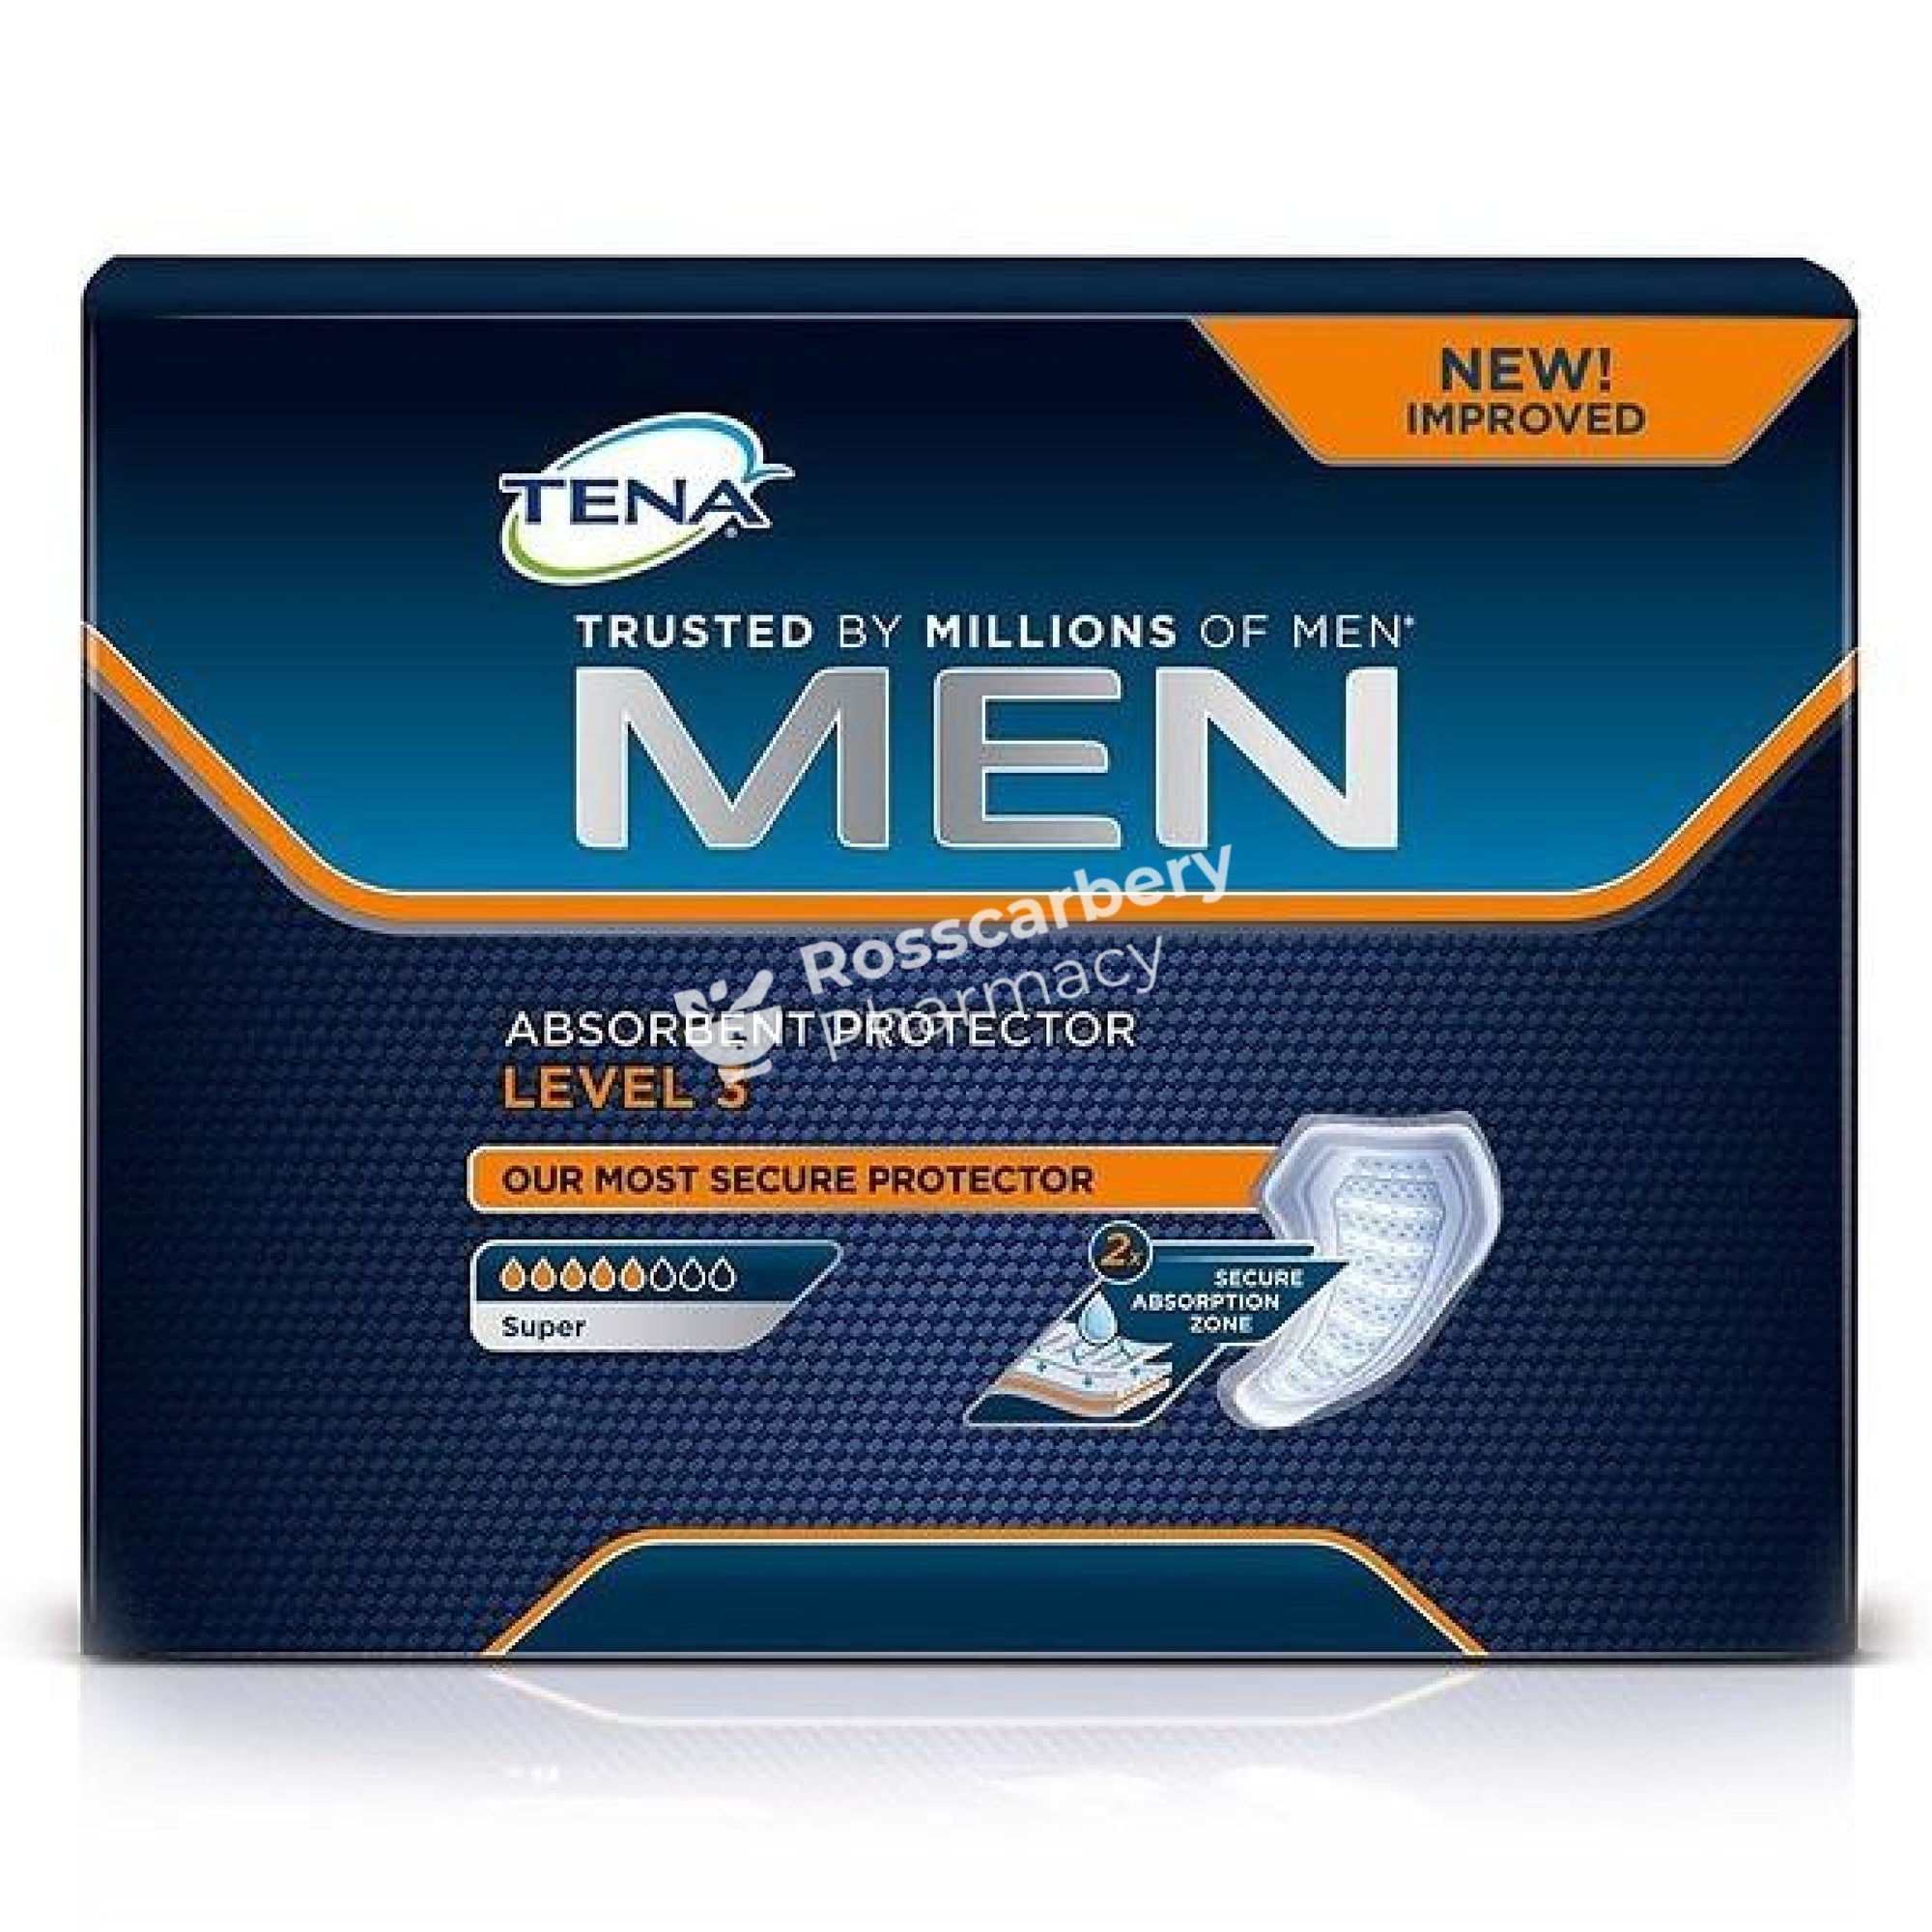 Tena Men Level 3 (Super) Absorbent Protectors Pads